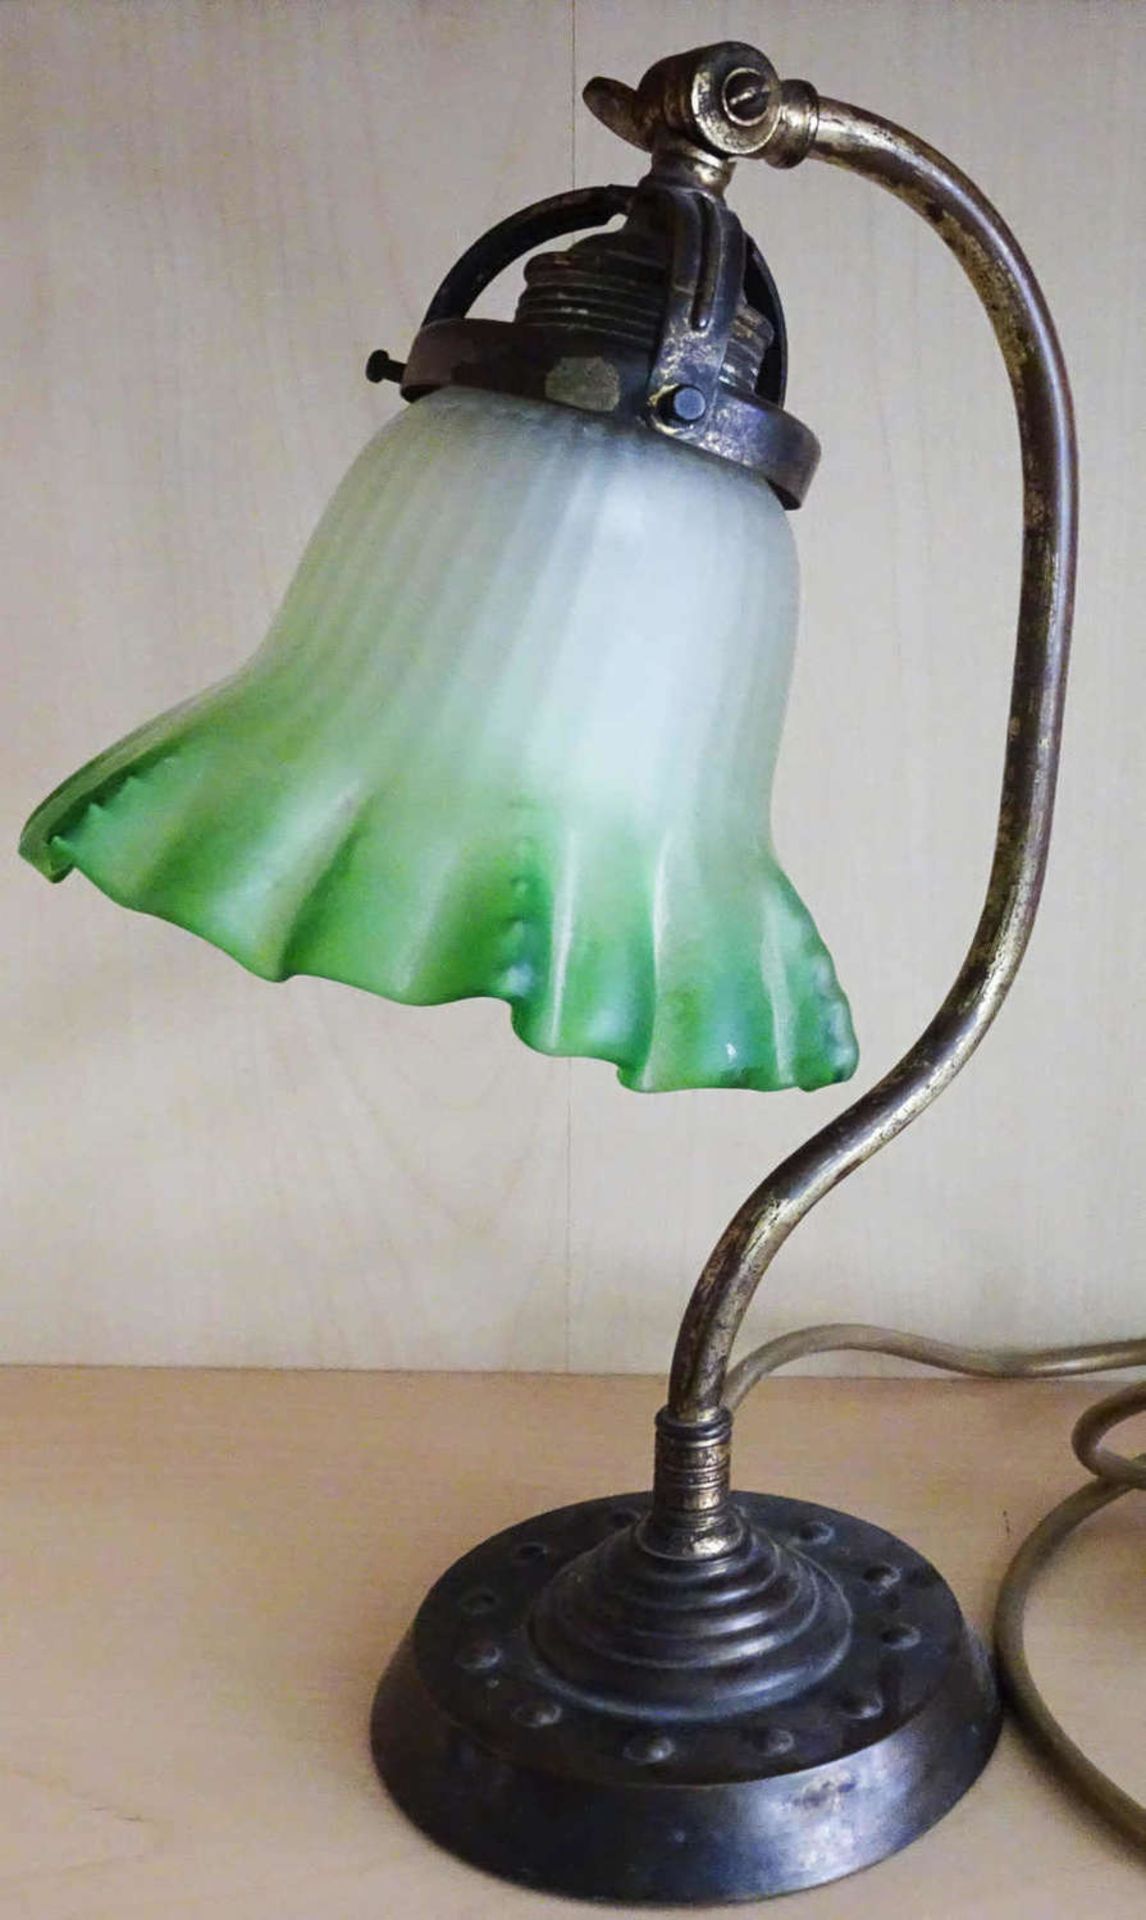 1 Jugendstil Tischlampe mit grünem Milchglasschirm in Metallmontur. Höhe ca. 35 cm1 Art Nouveau